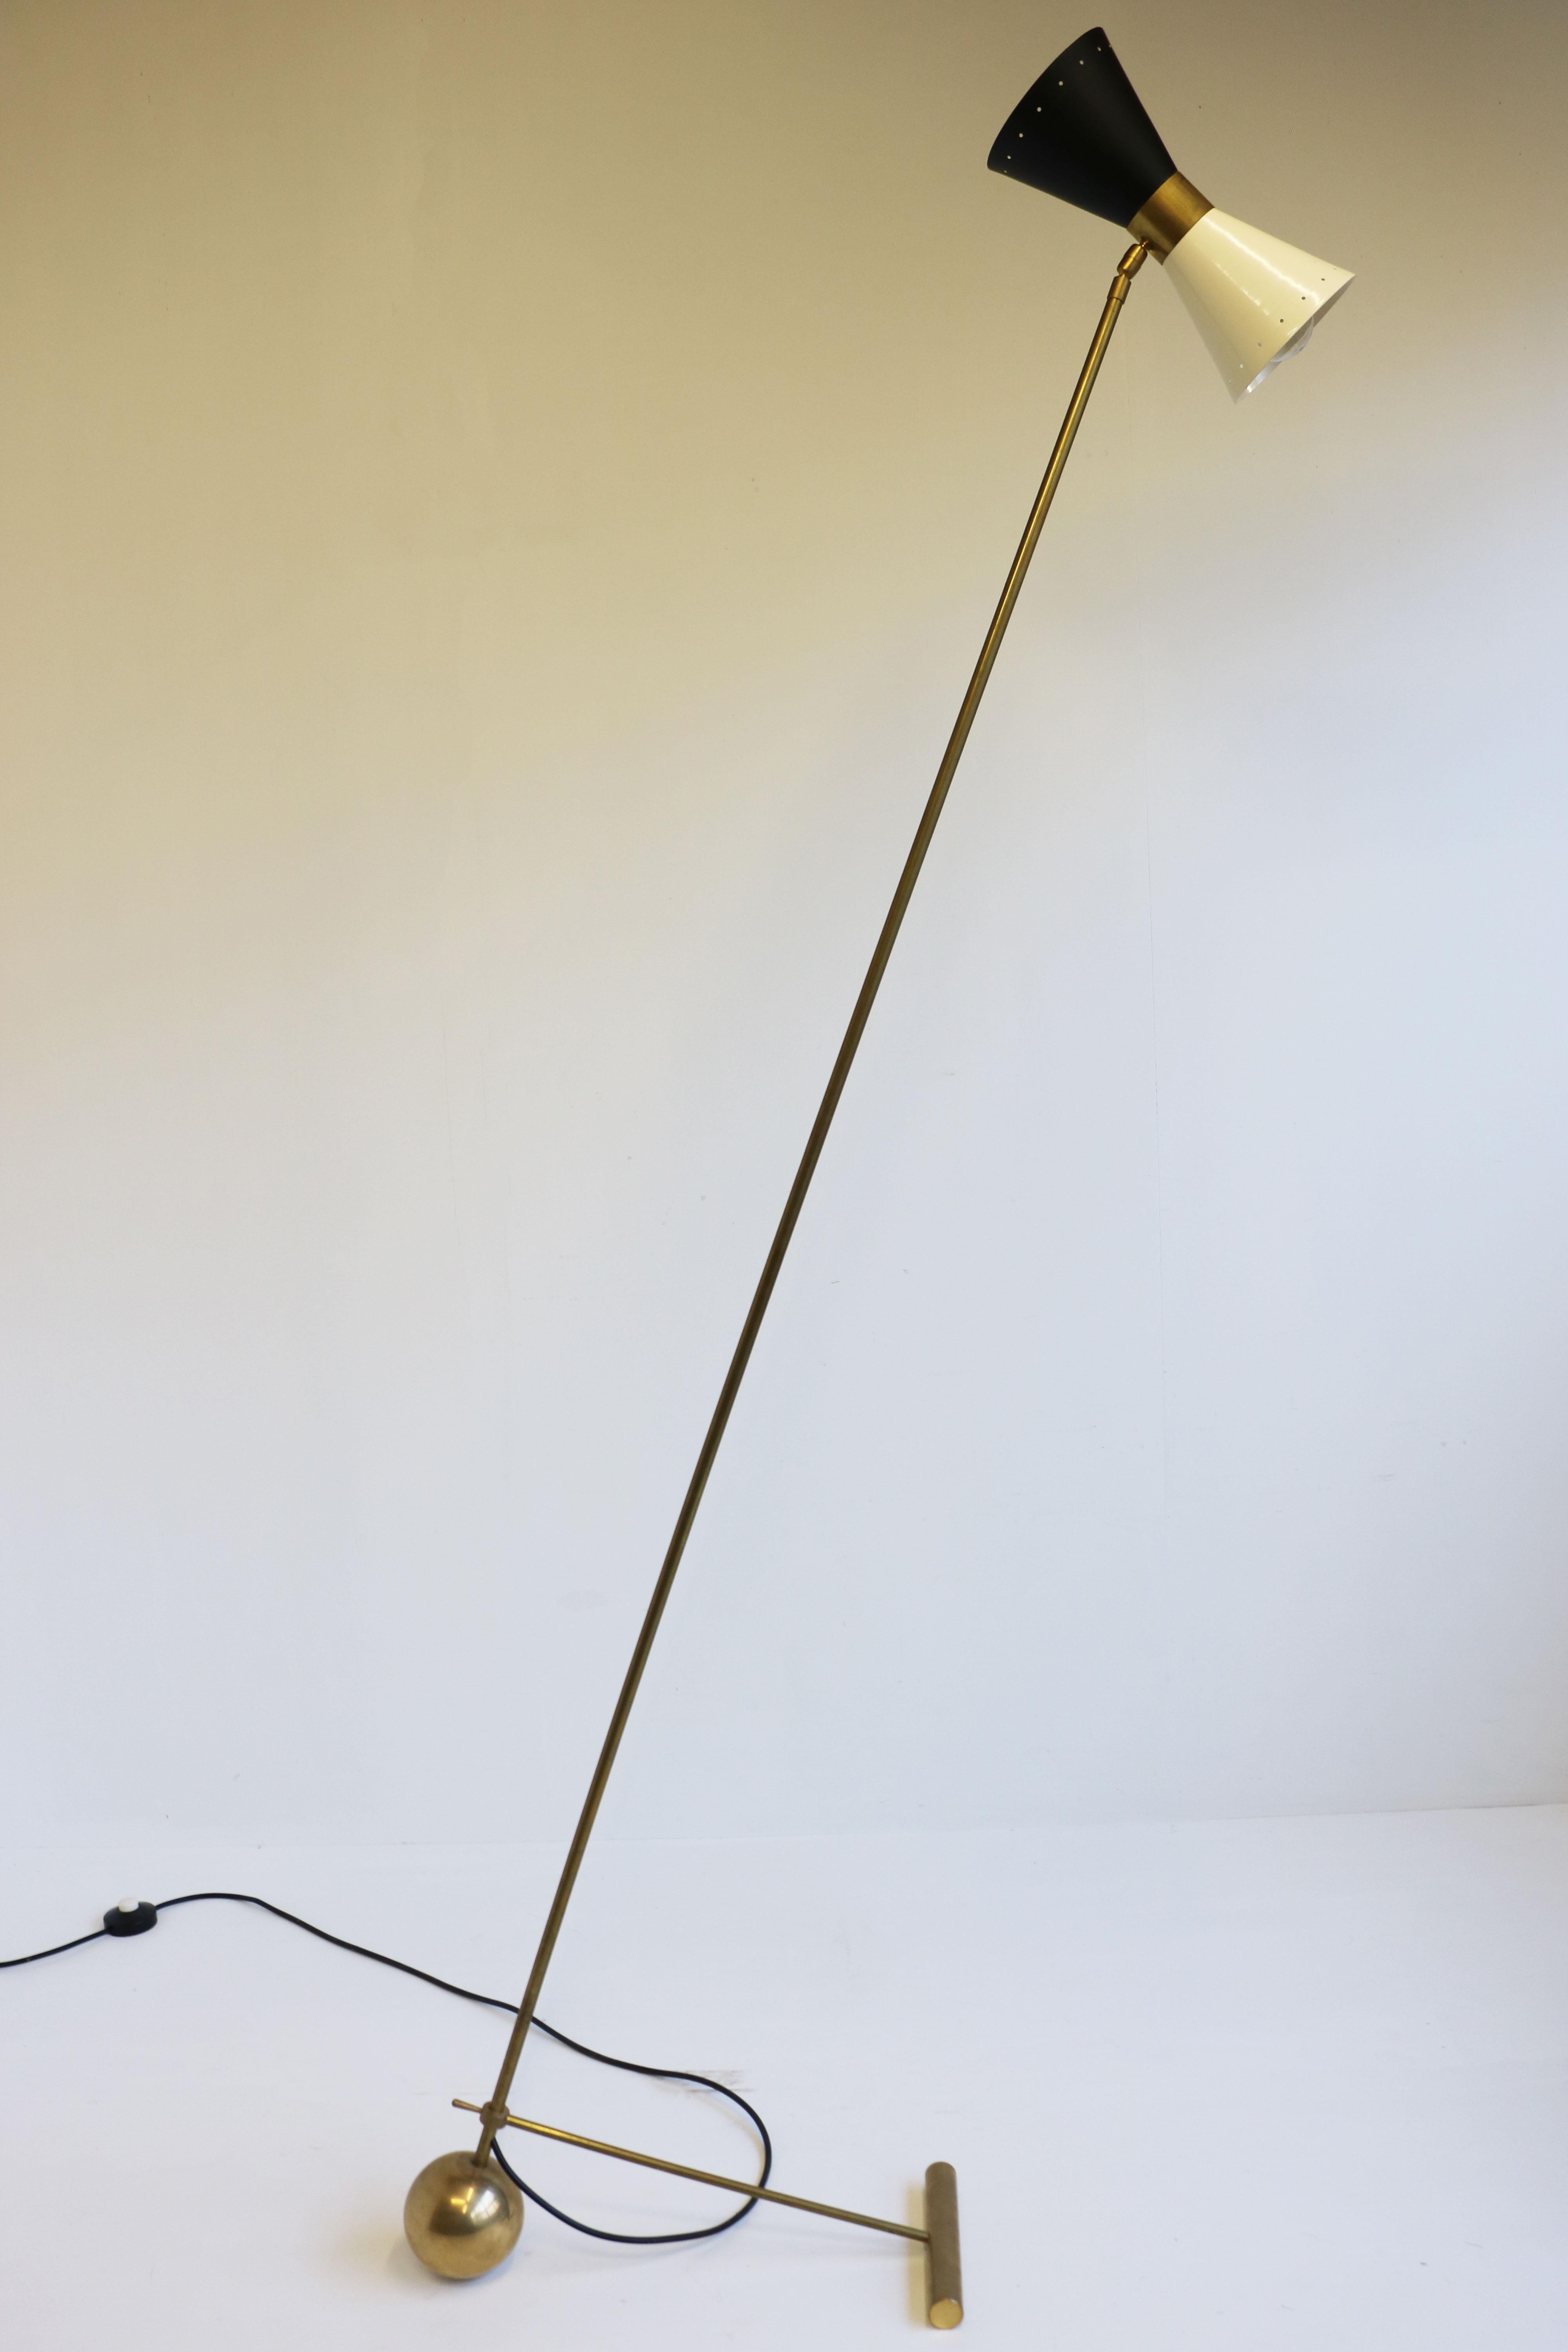 Wunderschöne Stehlampe im minimalistischen italienischen Design im Stil von Stilnovo 1950. 
Rahmen aus patiniertem Messing mit einzigartigem, minimalistischem Design. Wunderschöner diabolo-förmiger Schirm in Schwarz und Weiß. Zeitloses Design!